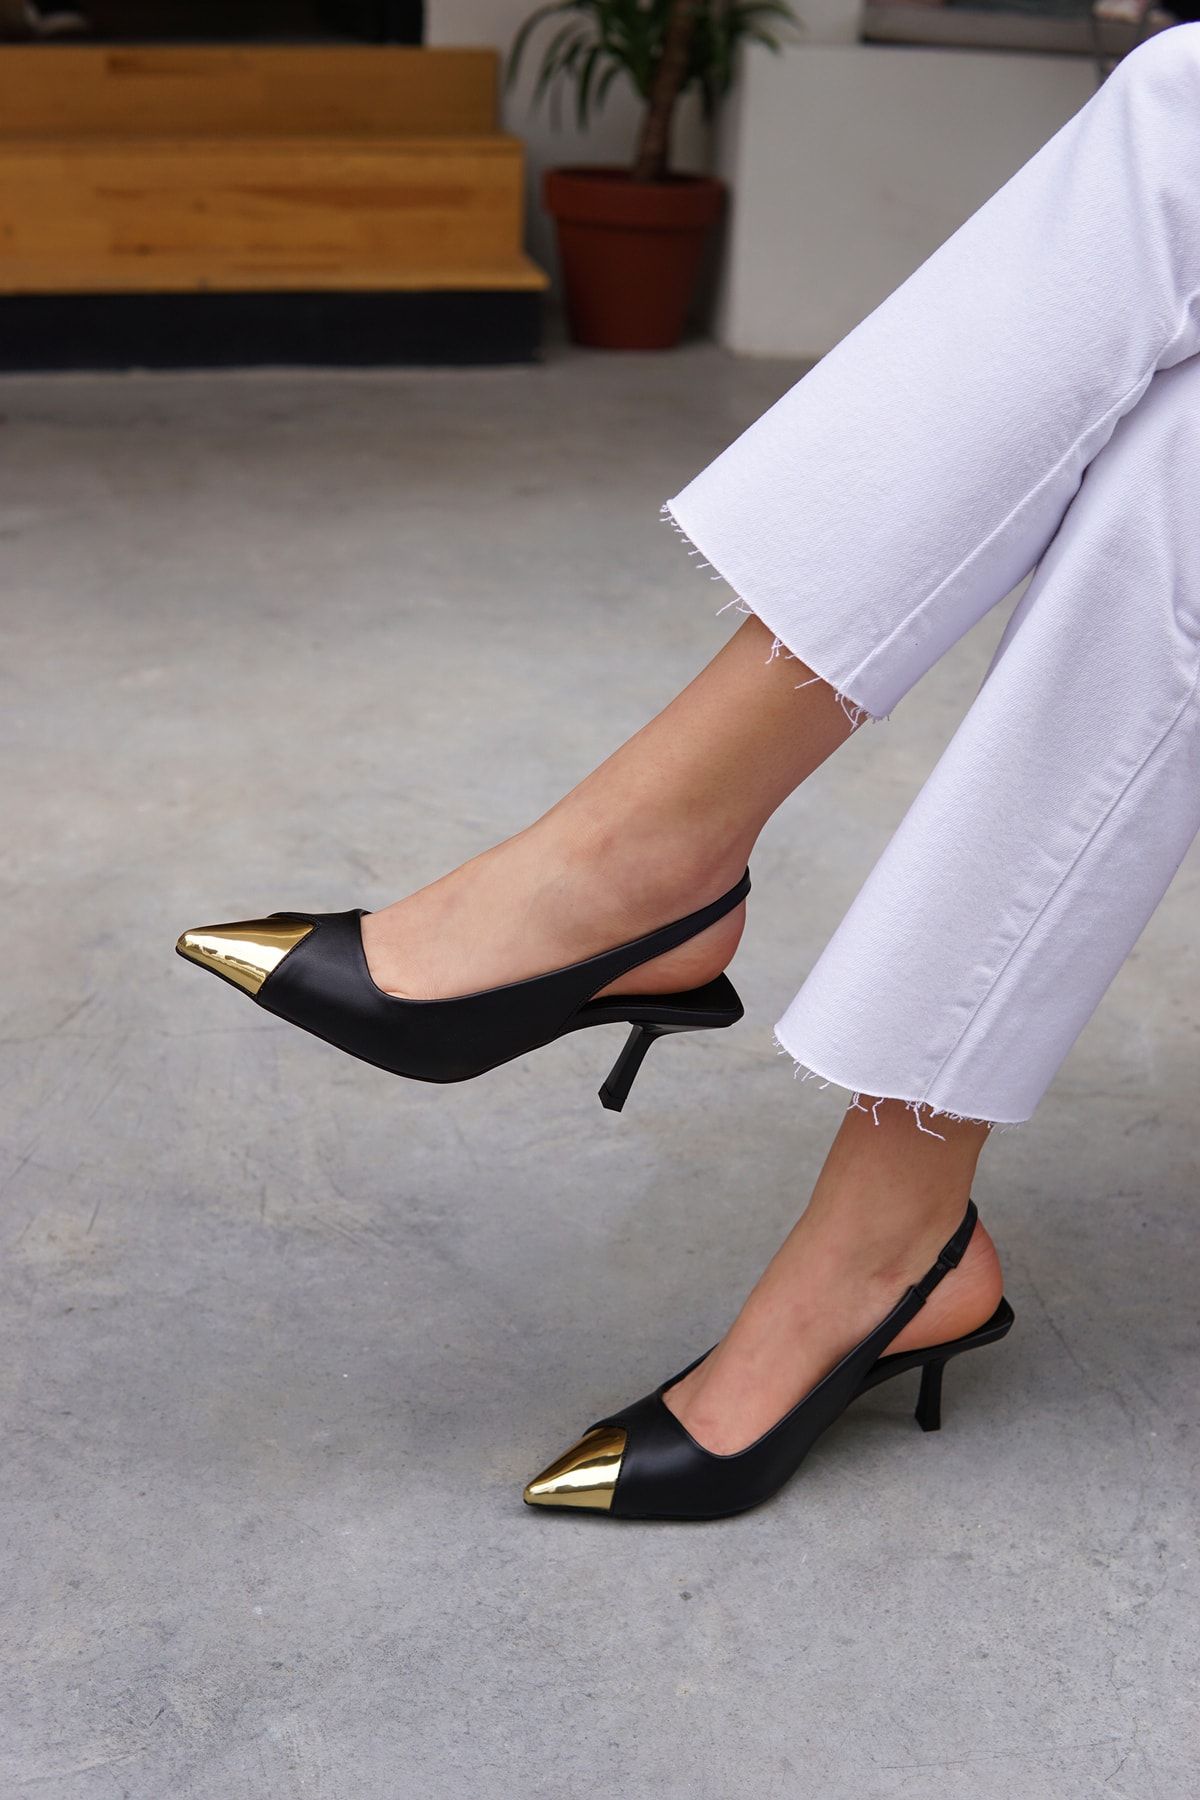 LAMİNTA Hena Siyah Deri Gold Detaylı Kadın Topuklu Ayakkabı